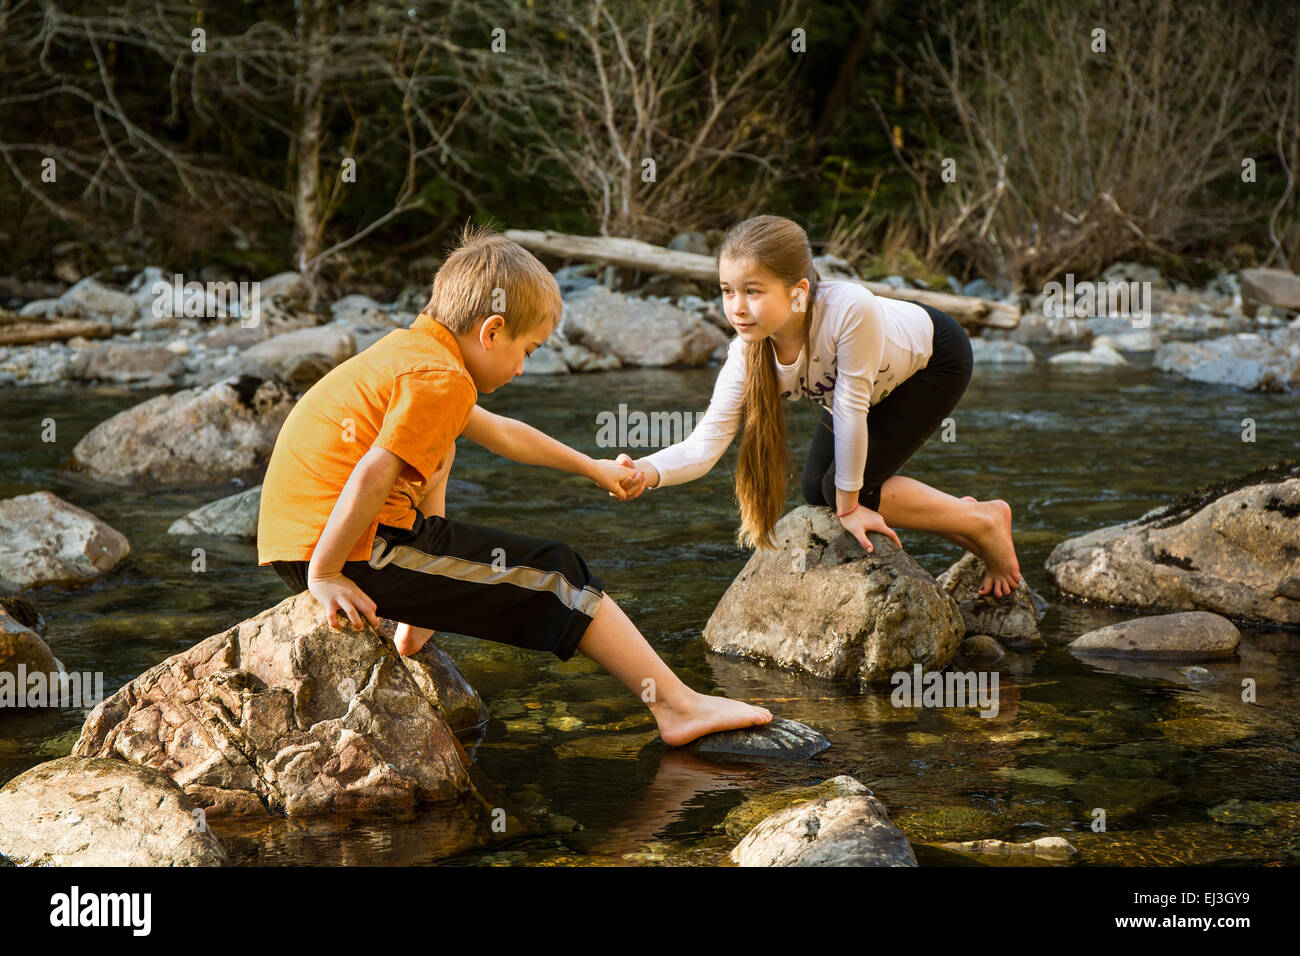 Neunjähriges Mädchen ermutigen ihr sieben Jahre alten Bruder, wie Sie vorwärts über die Felsen in der flachen Fluss zu kommen Stockfoto